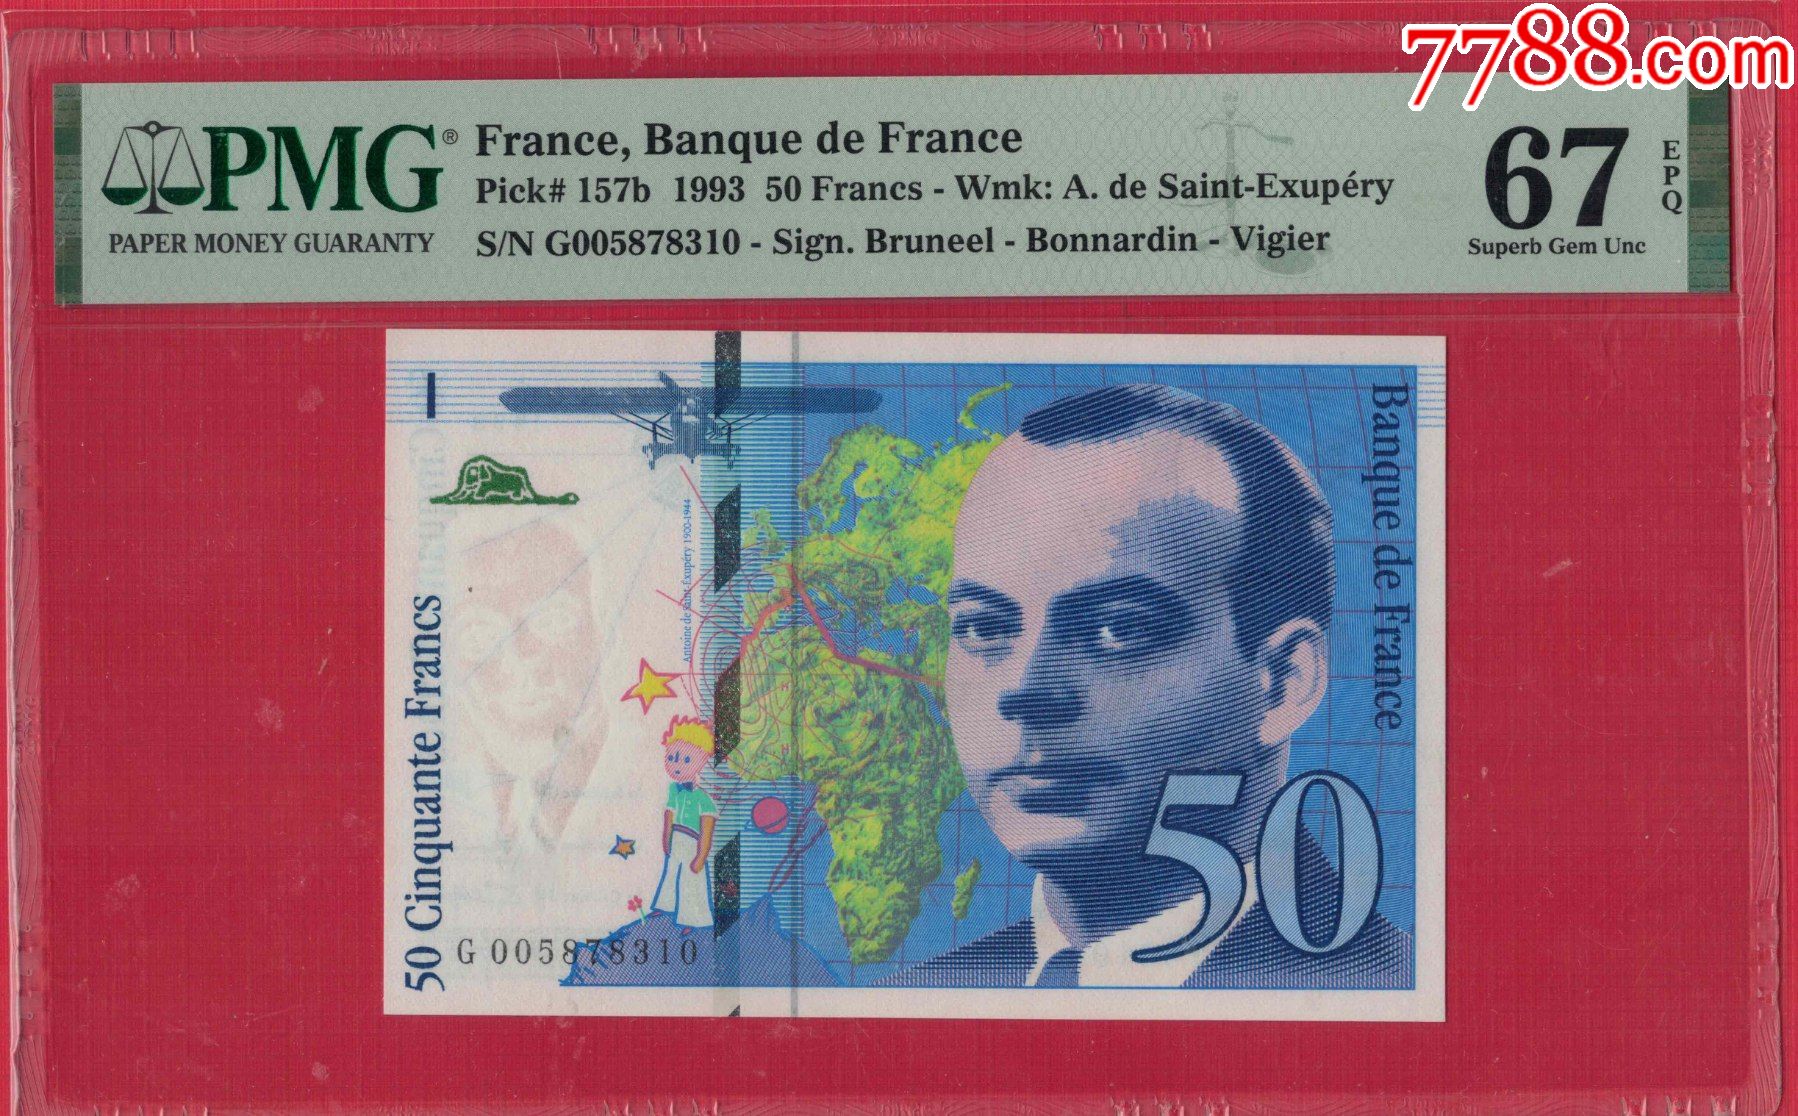 法国50元纸币图片-图库-五毛网